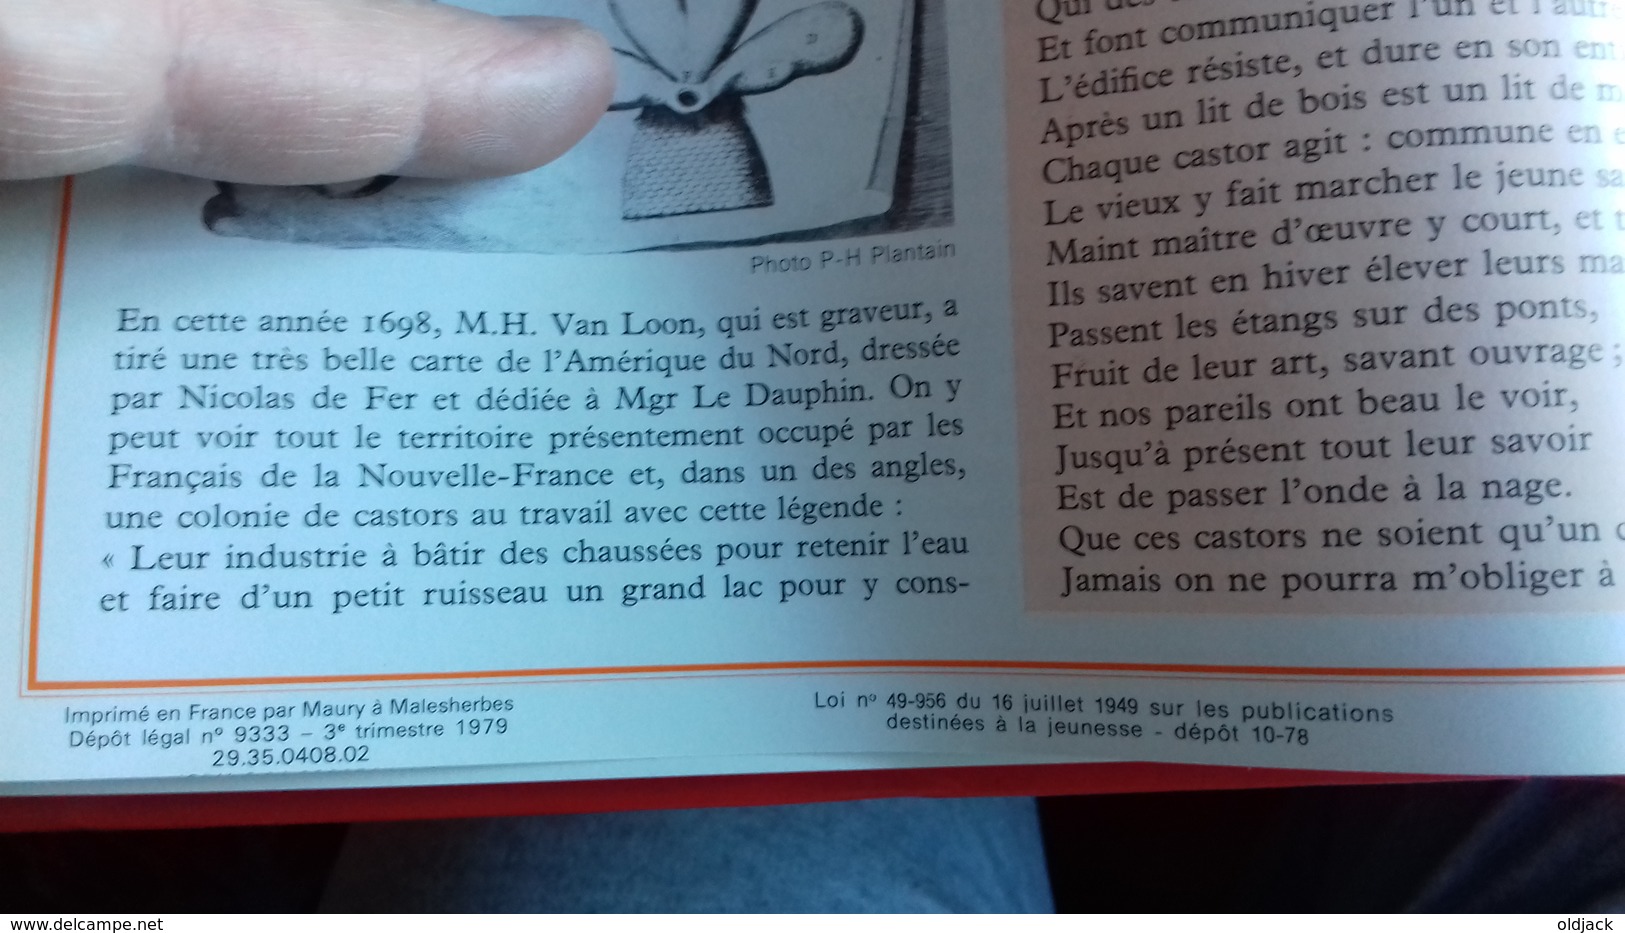 LA VIE PRIVEE DES HOMMES " AU TEMPS DES MOUSQUETAIRES"Pierre MIQUEL.1979. (45R5) - History